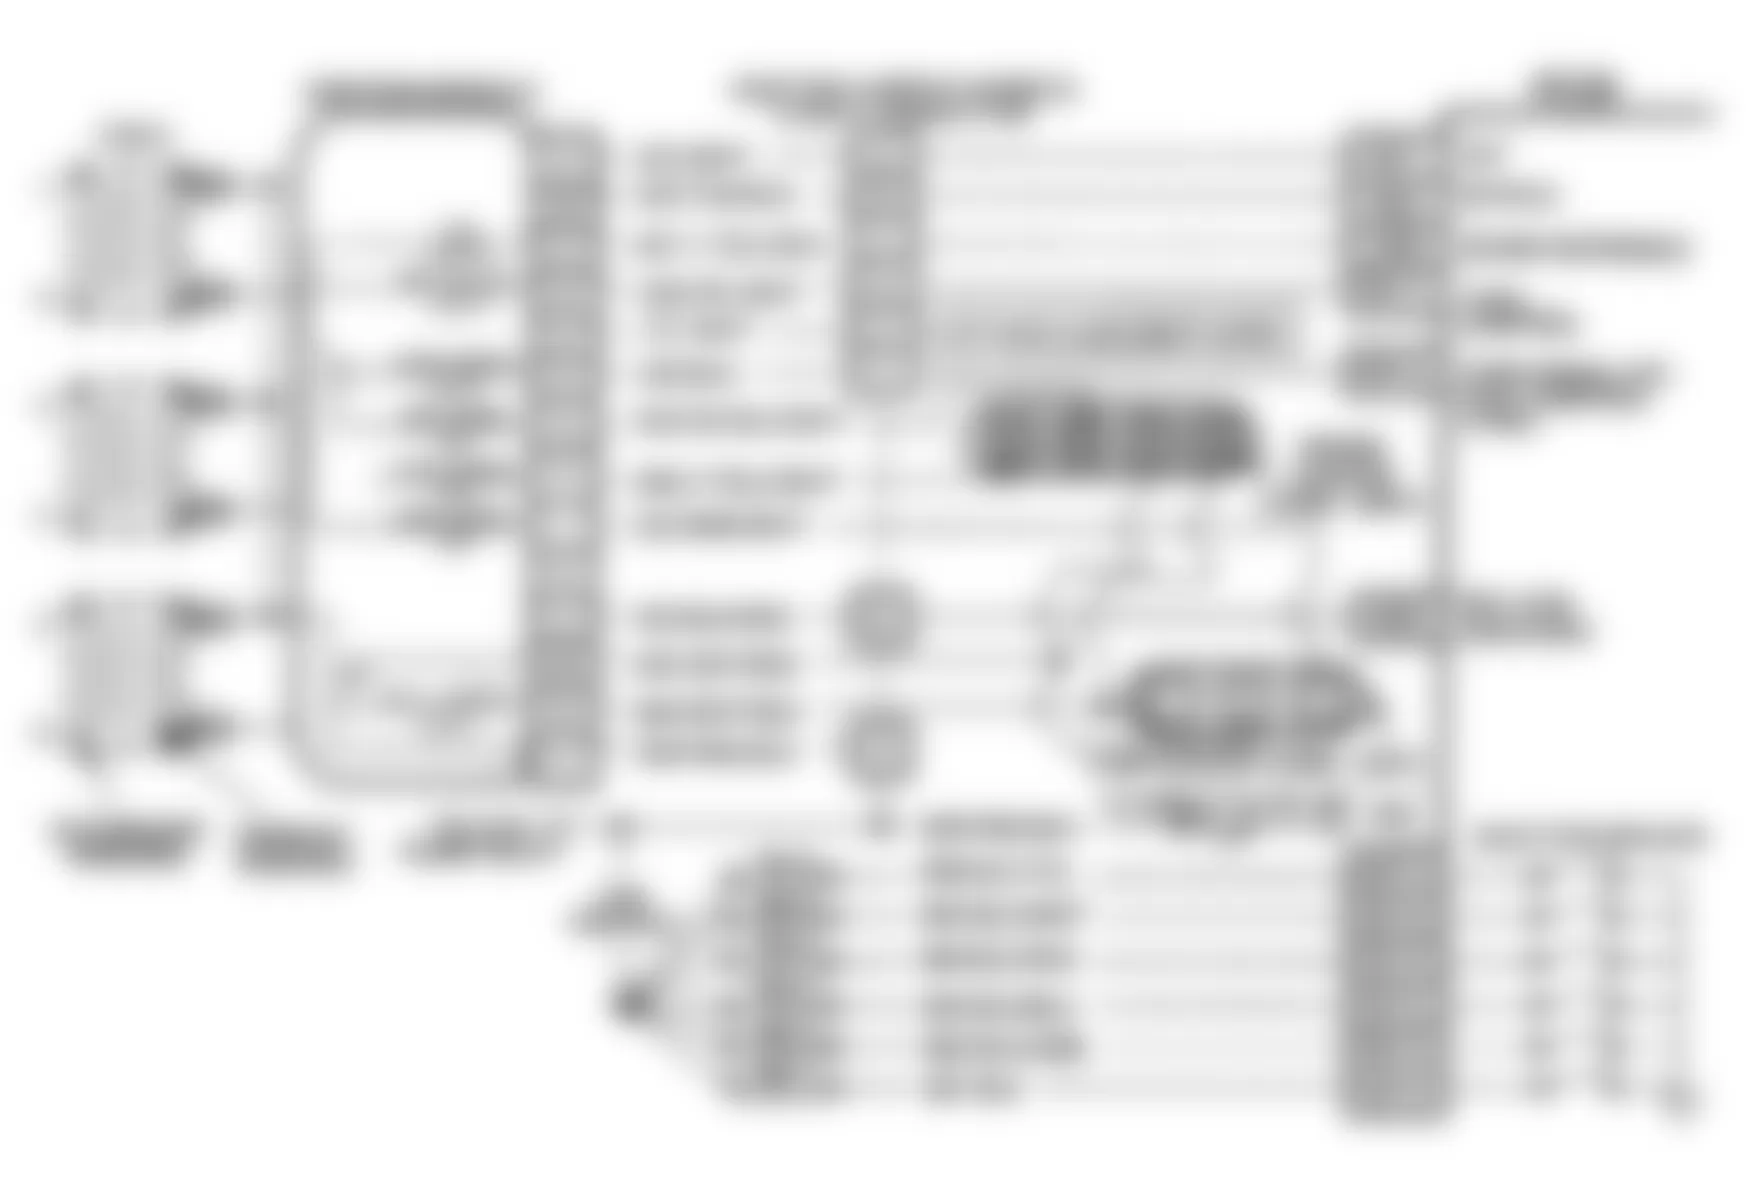 Buick Riviera 1991 - Component Locations -  Code 41, Schematic, Reatta & Riviera, Cam Sensor Circuit